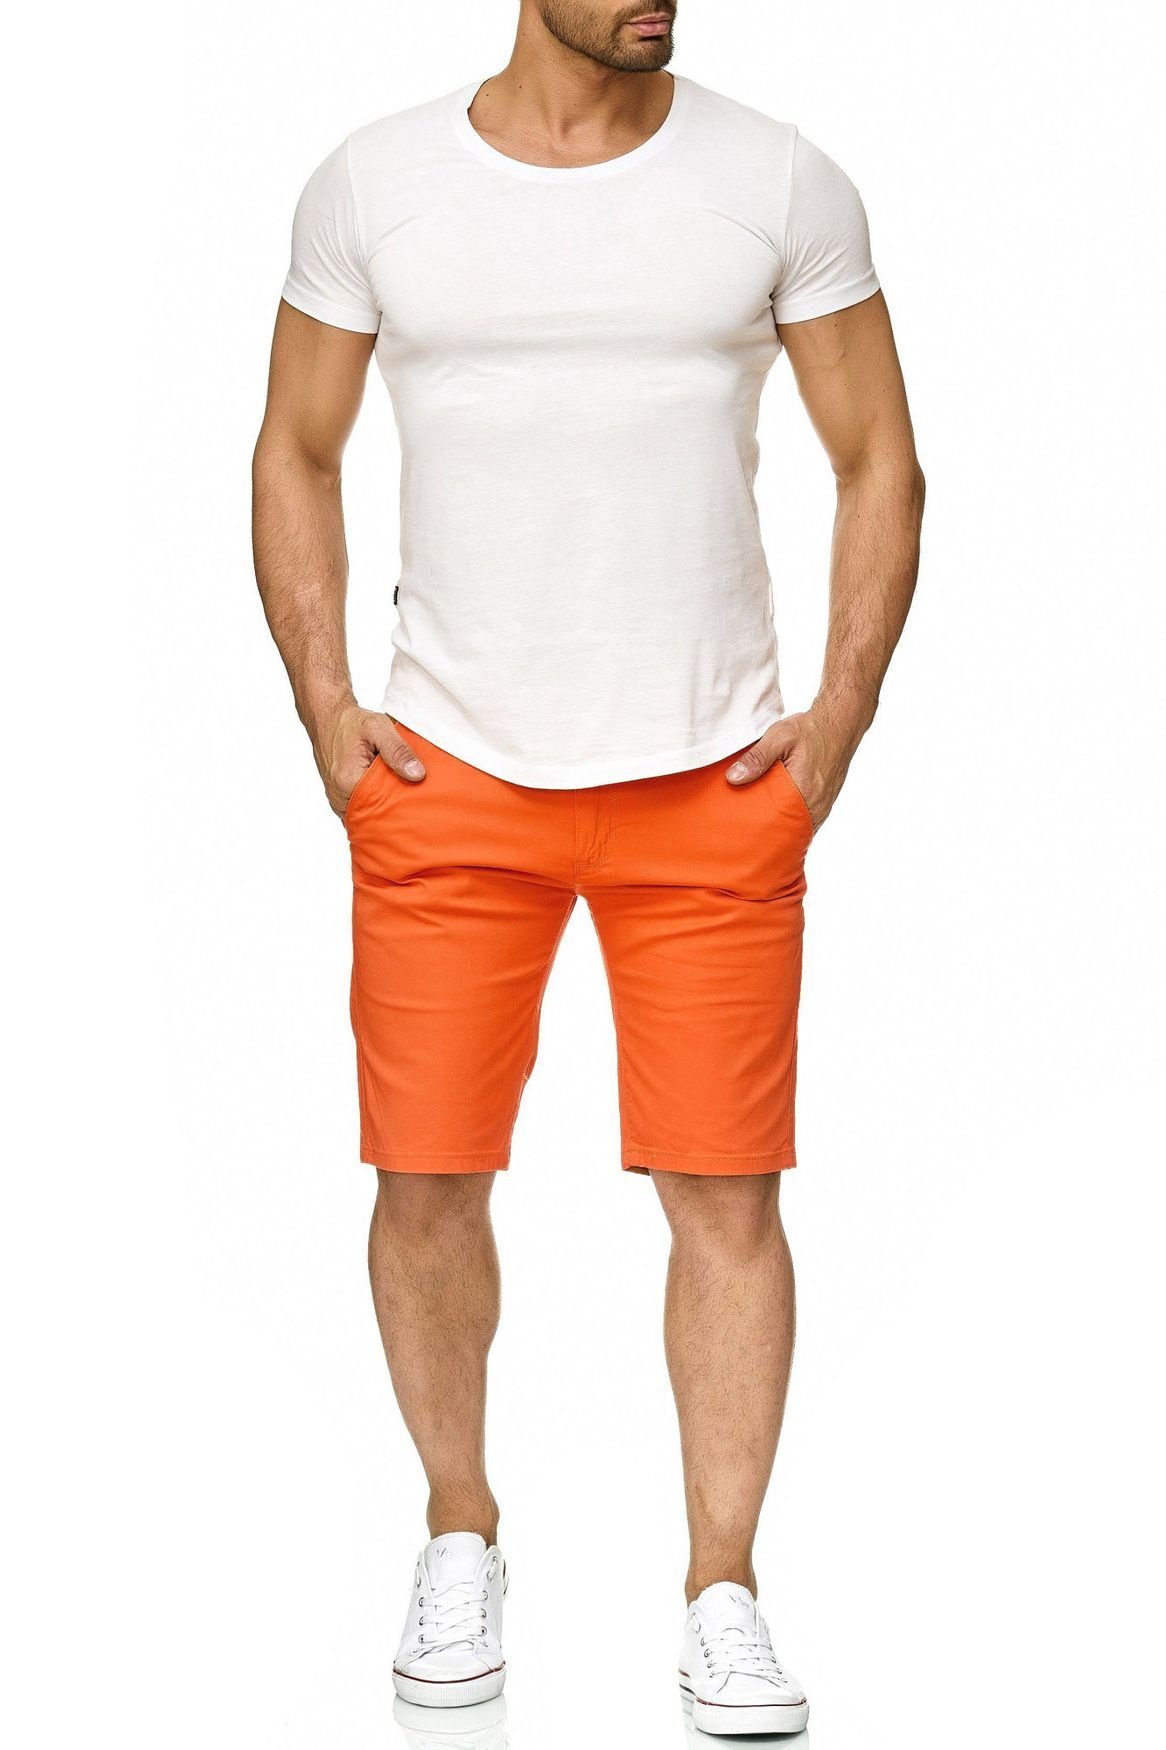 & Chinoshorts Kurze Hose Bermuda Fredy Sommer Roy Capri in Shorts 2300 Orange Egomaxx Chino (1-tlg)